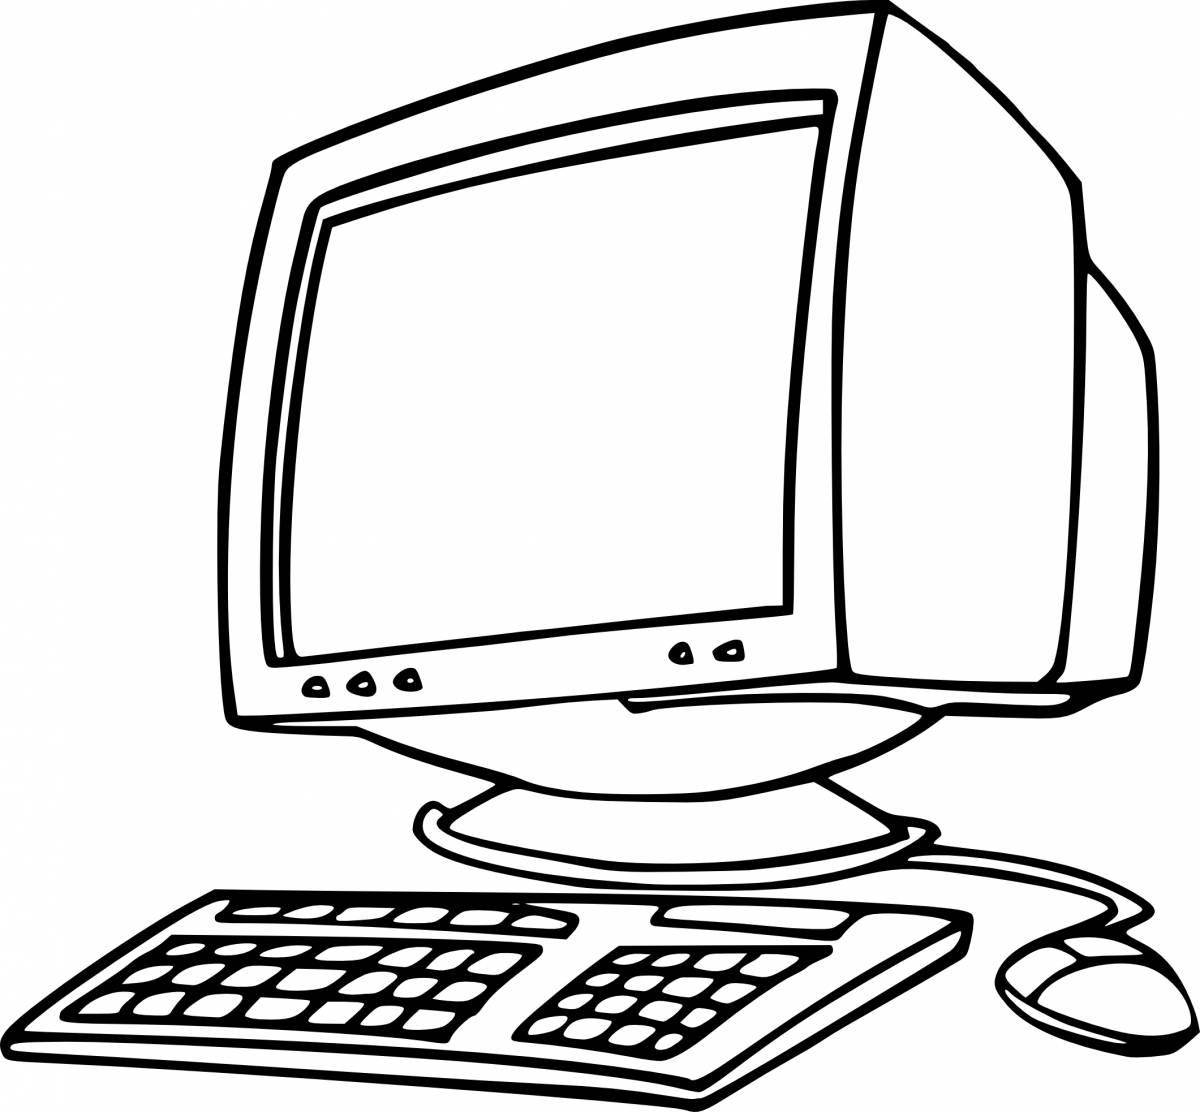 Увлекательная страница рисования компьютерной мышью